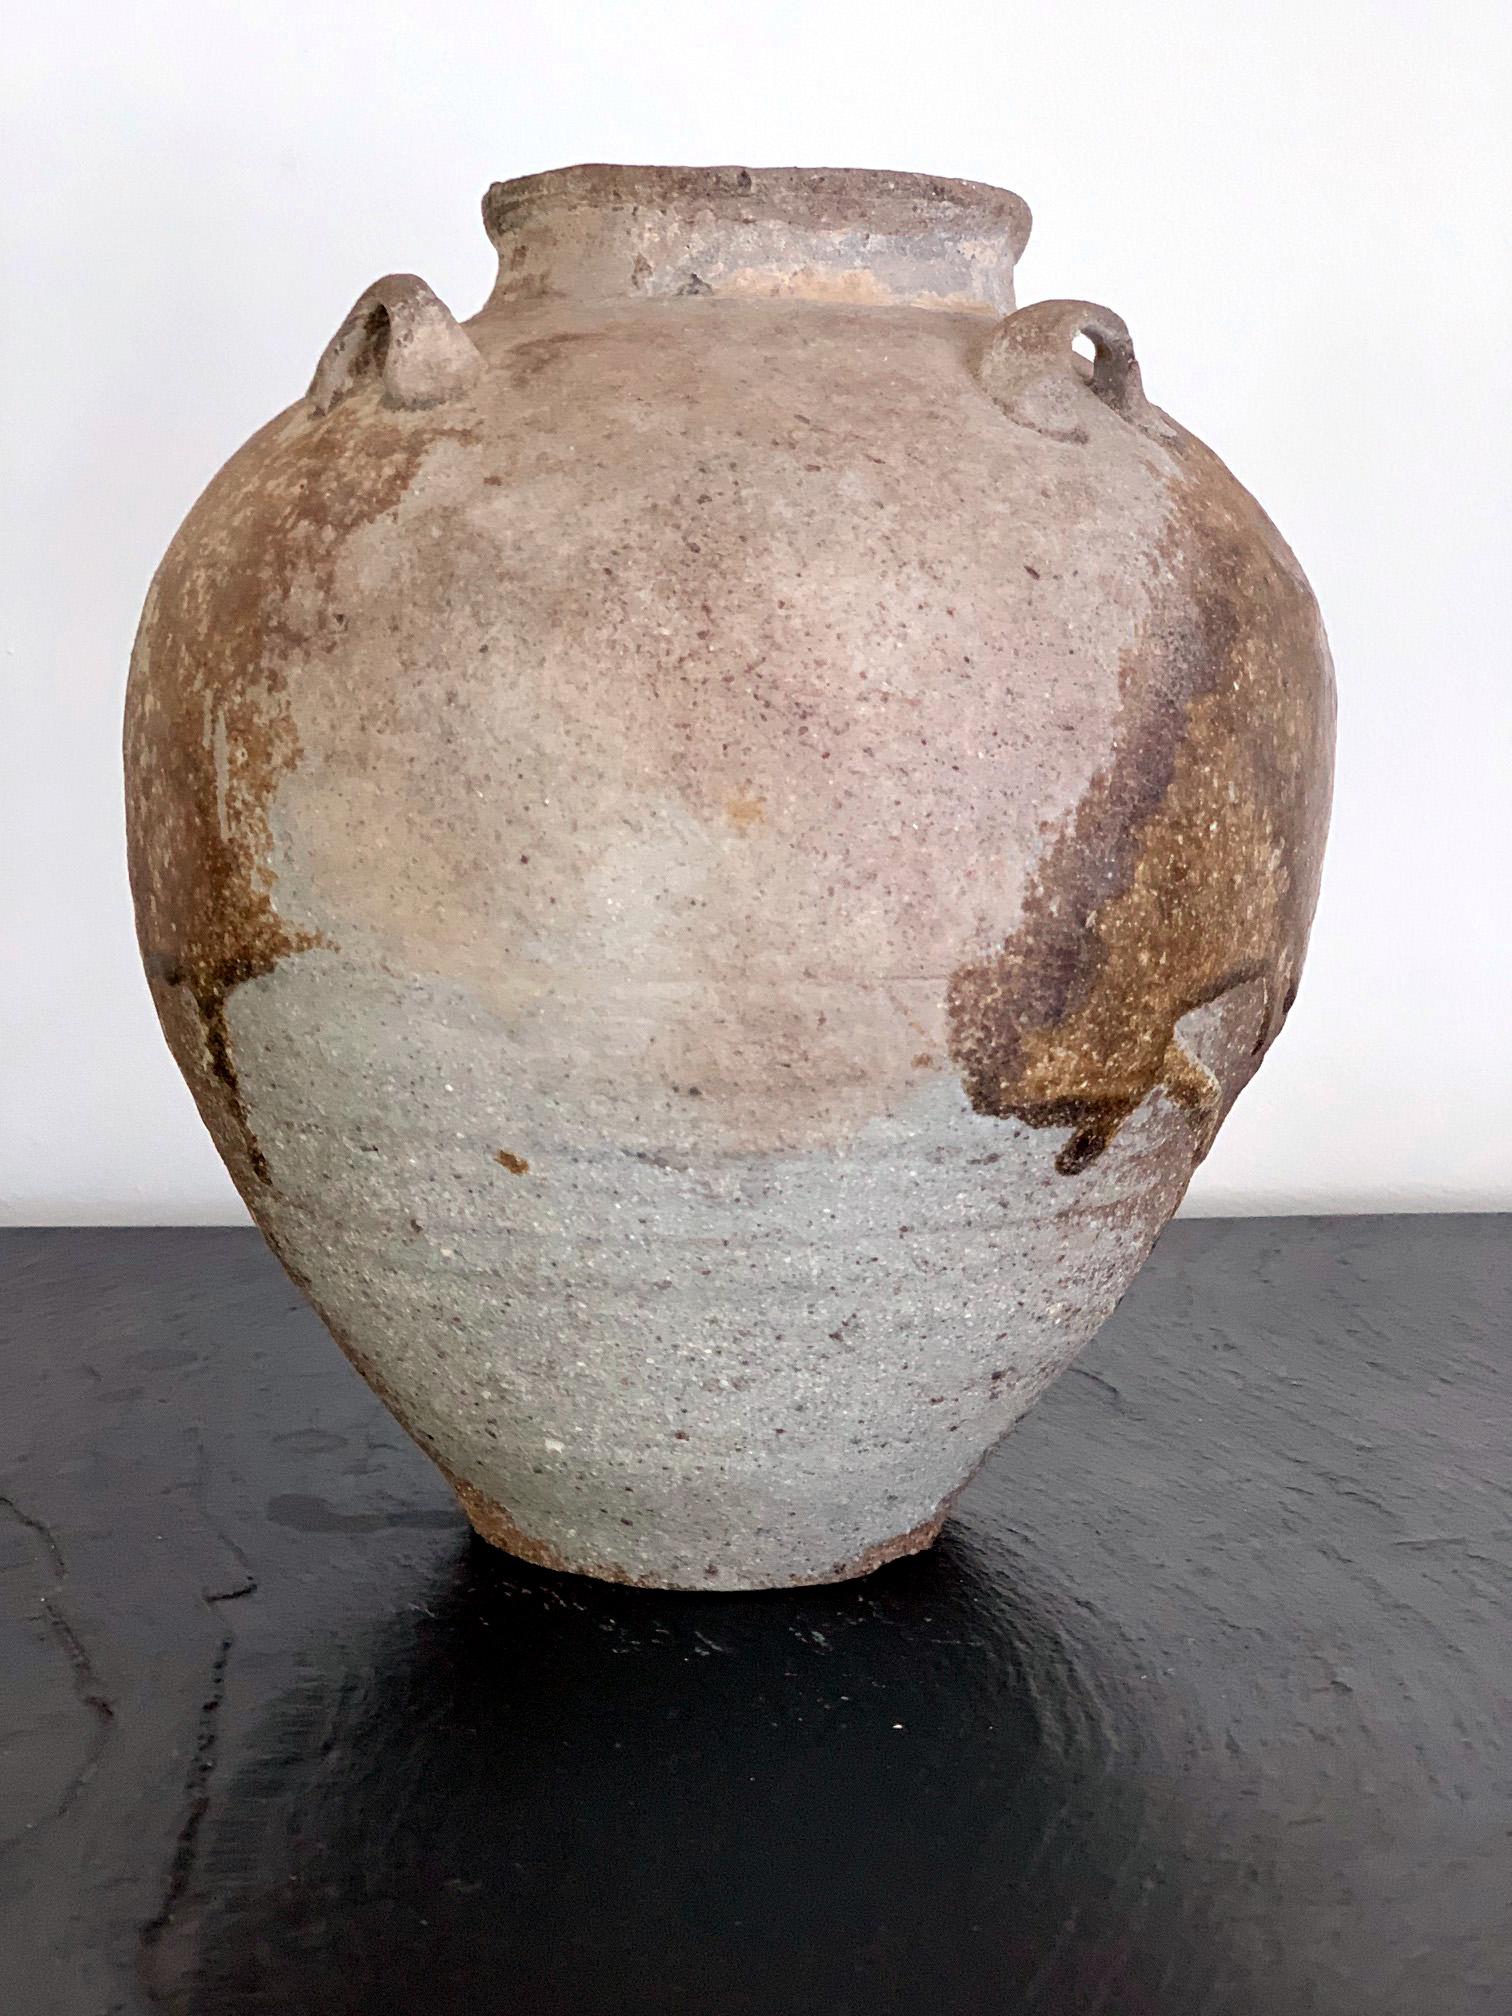 ceramic jars from china are used as storage jars